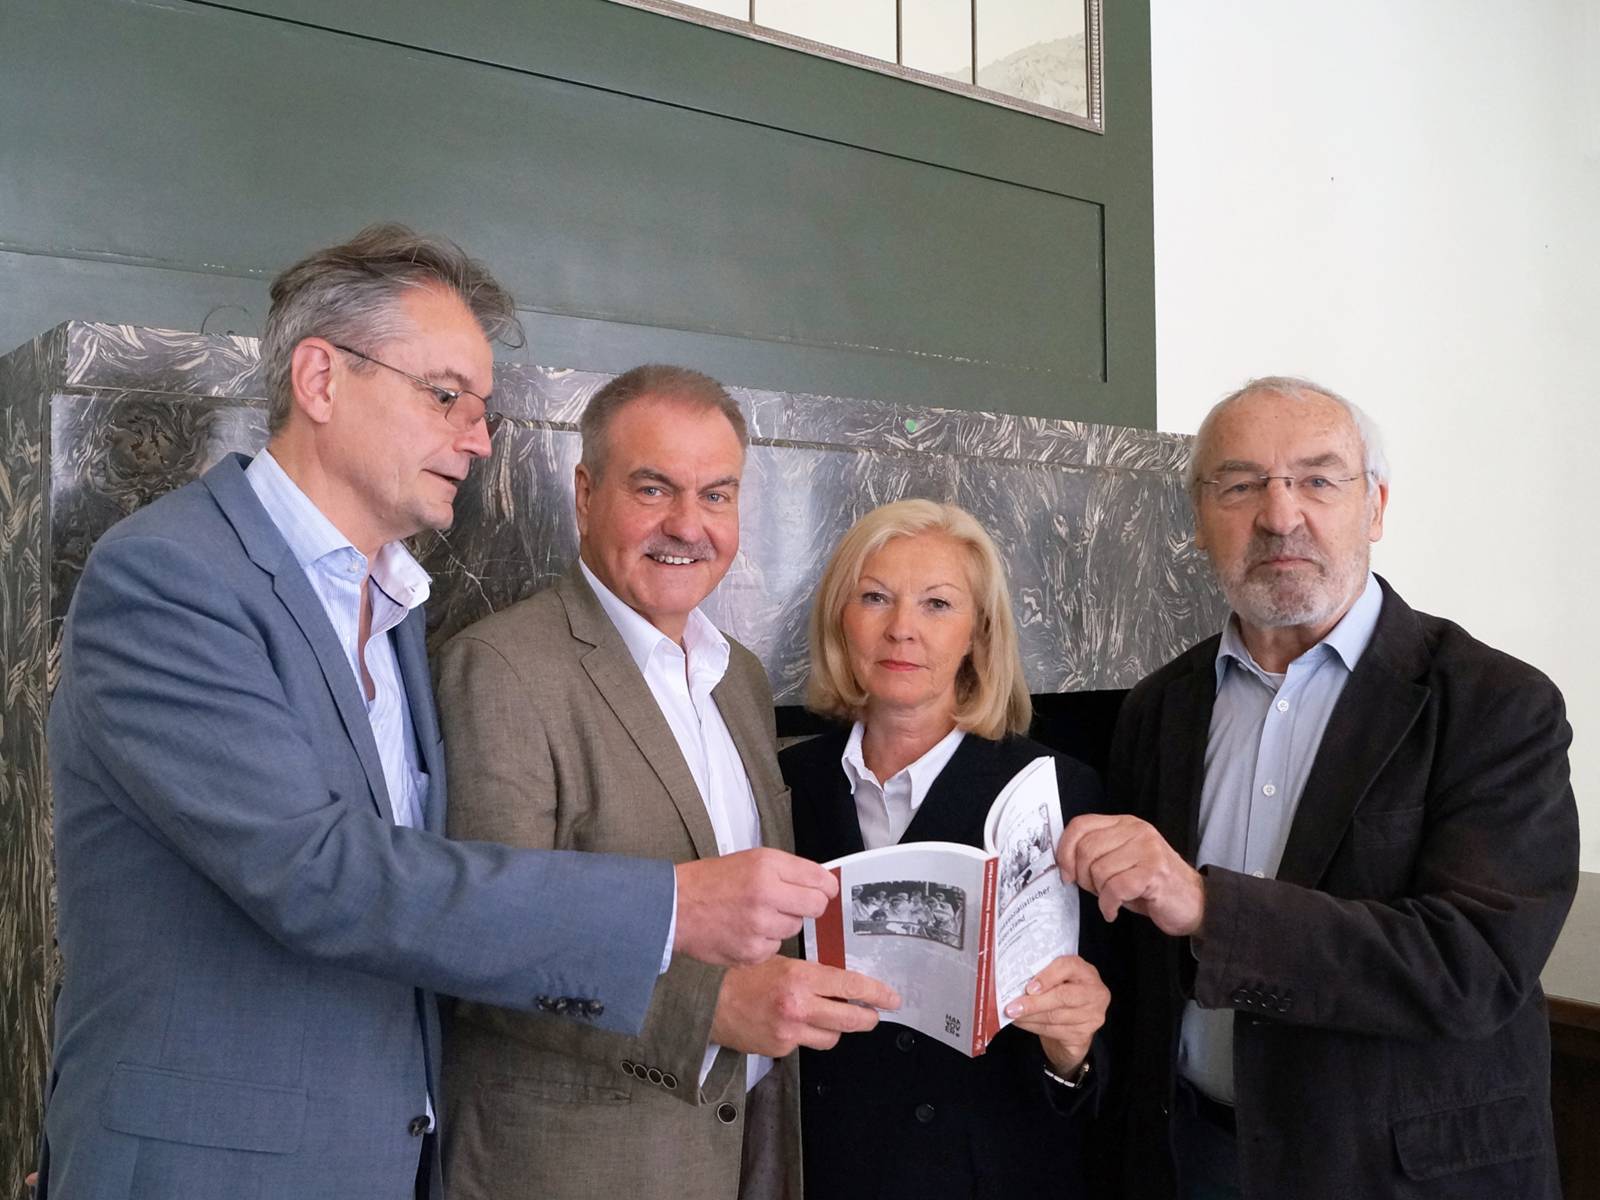 Vier Personen präsentieren das Buch "Linkssozialistischer Widerstand gegen die nationalsozialistische Diktatur in Hannover"